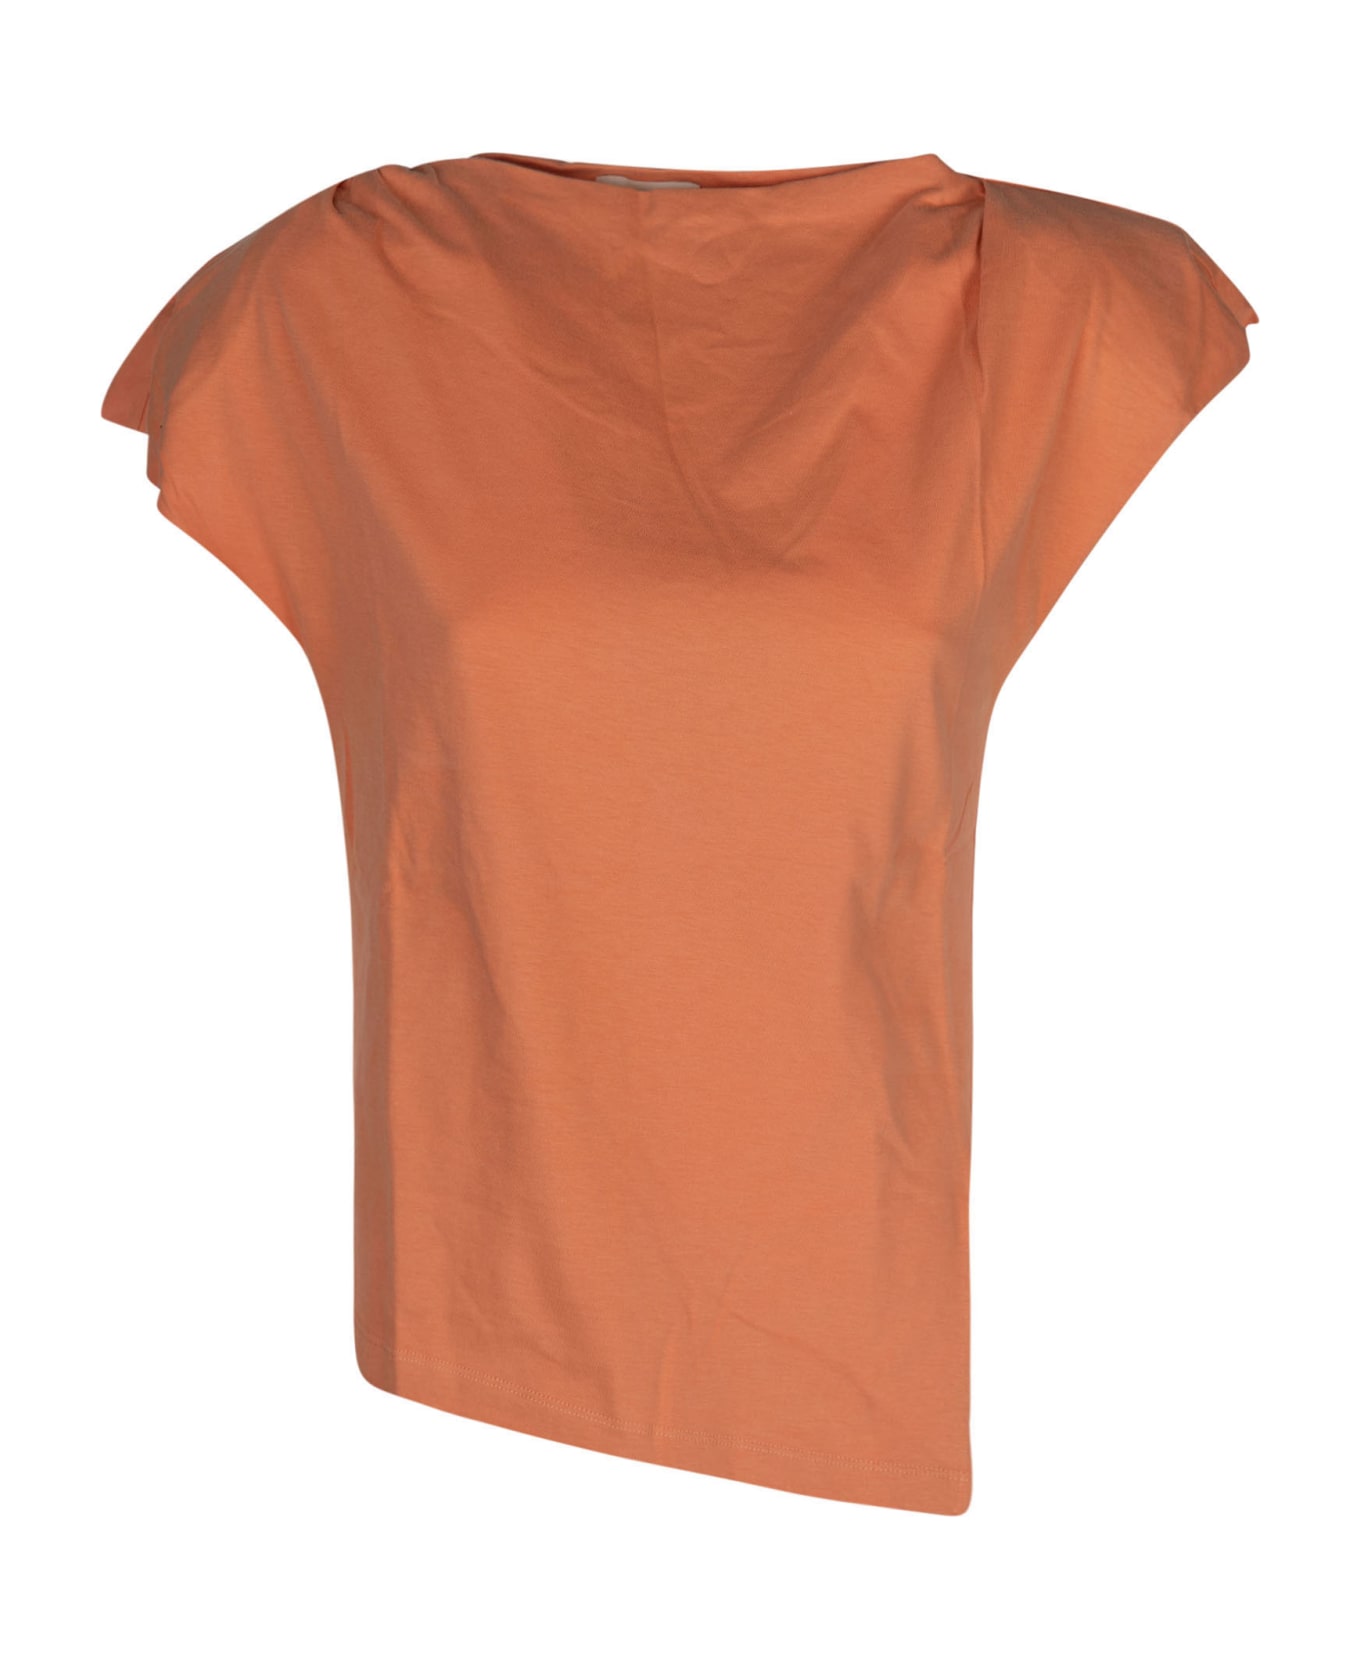 Isabel Marant Sebani T-shirt - Peach